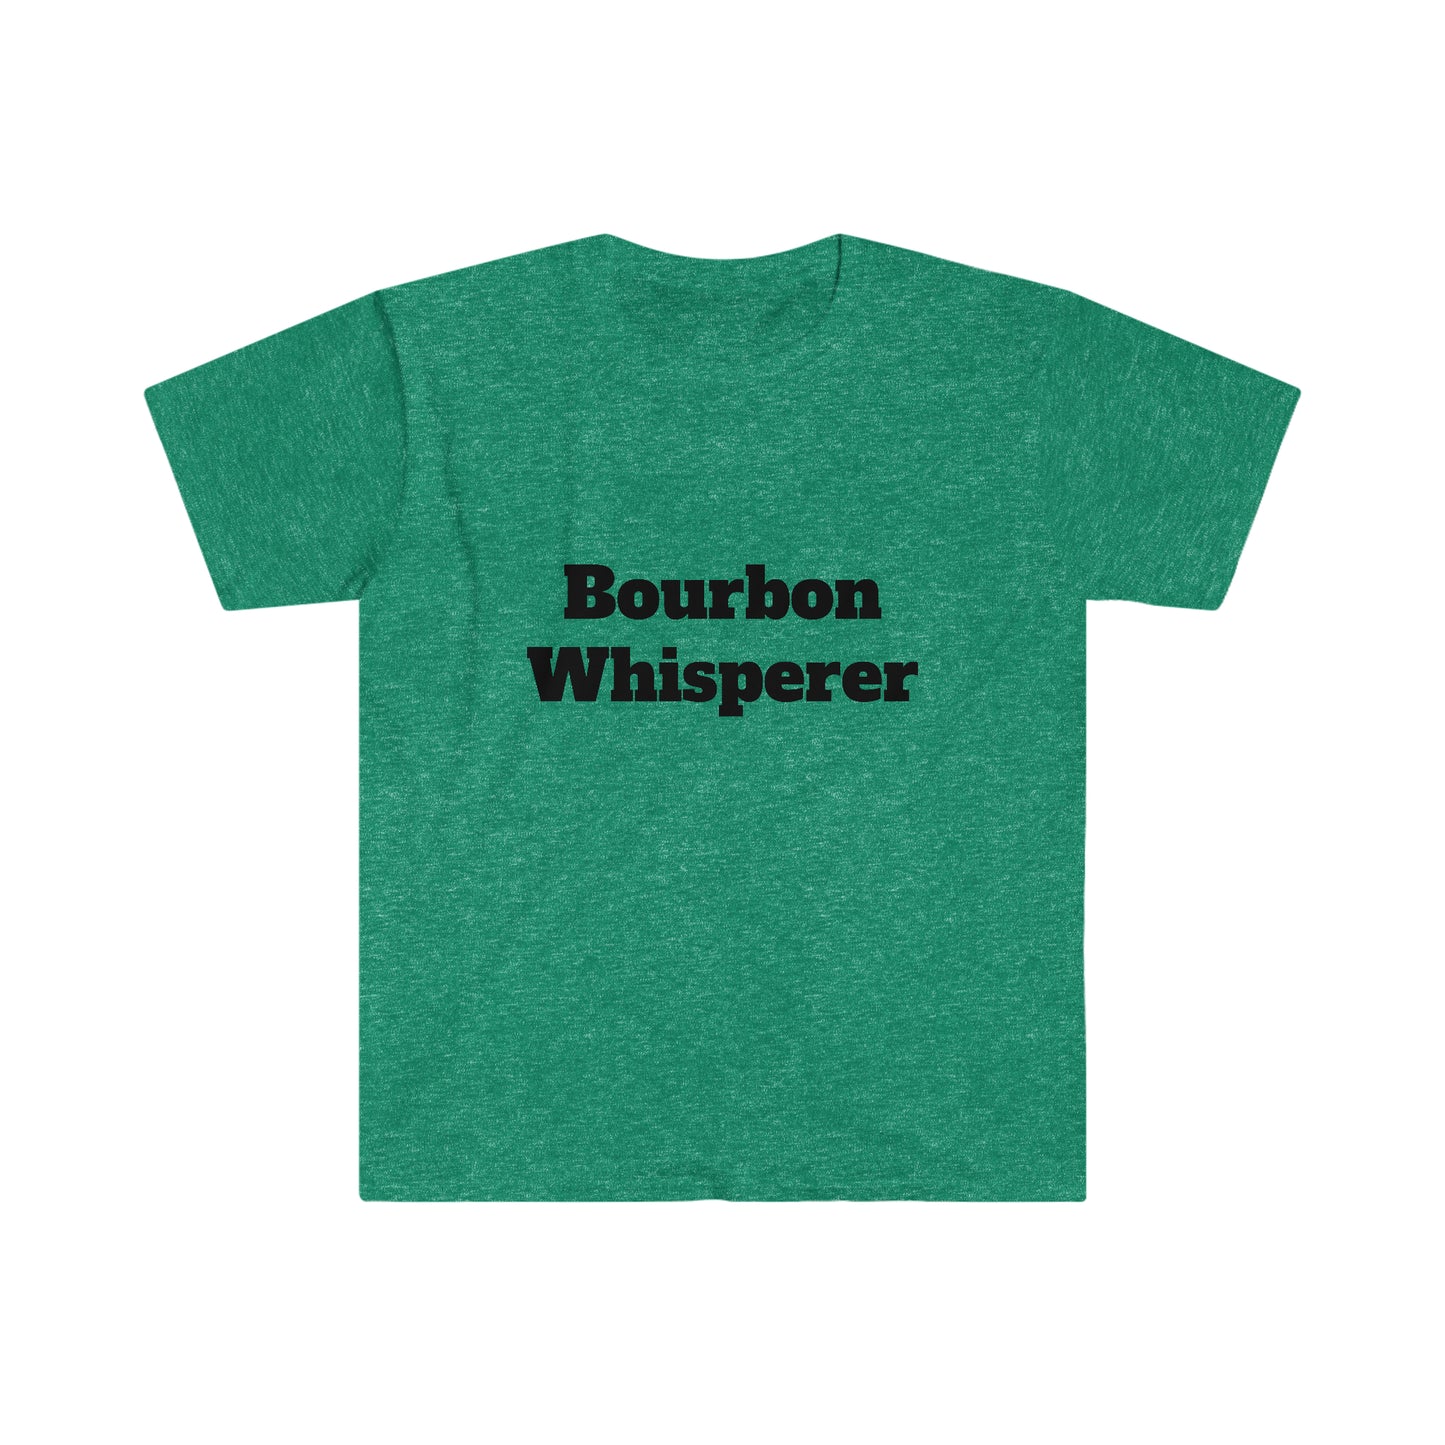 Bourbon Whisperer Unisex Softstyle T-Shirt